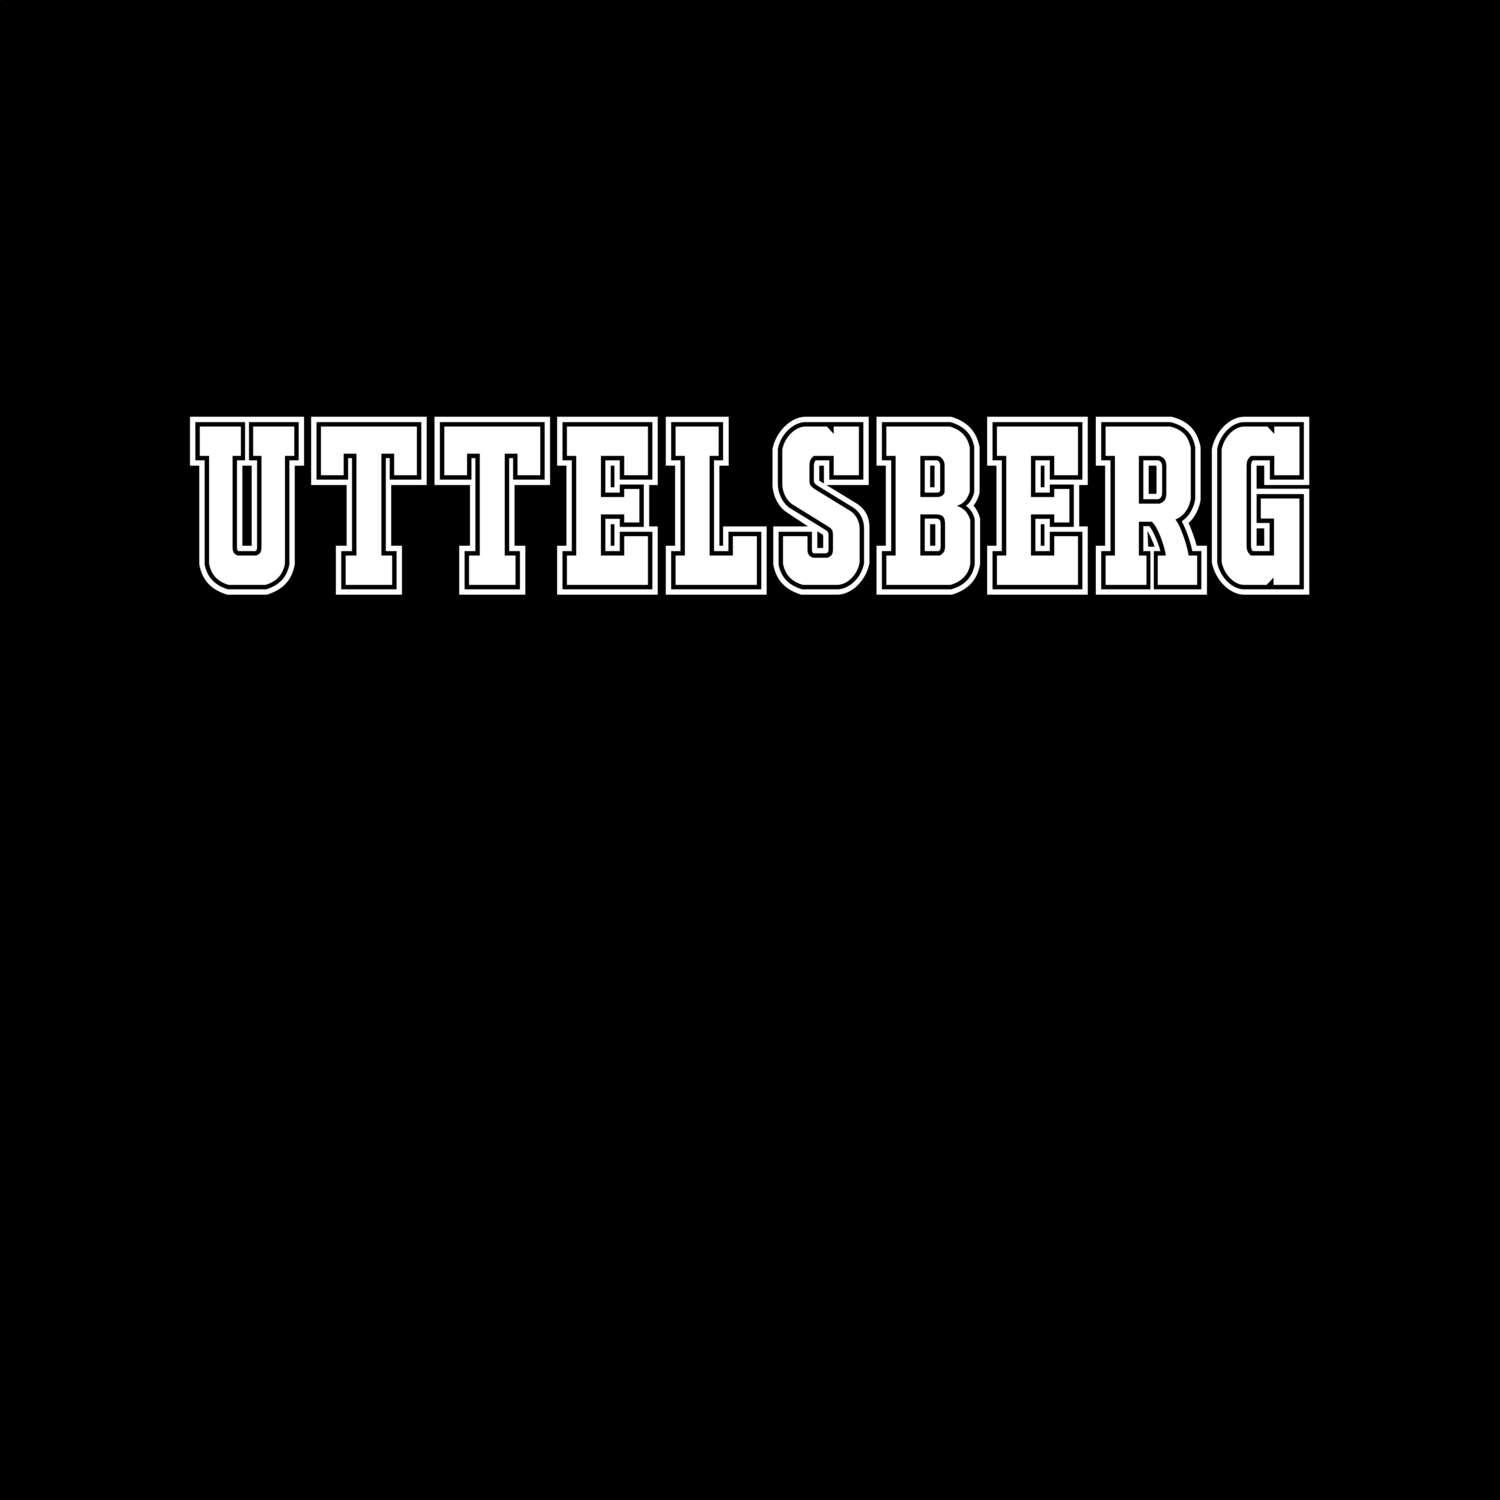 Uttelsberg T-Shirt »Classic«